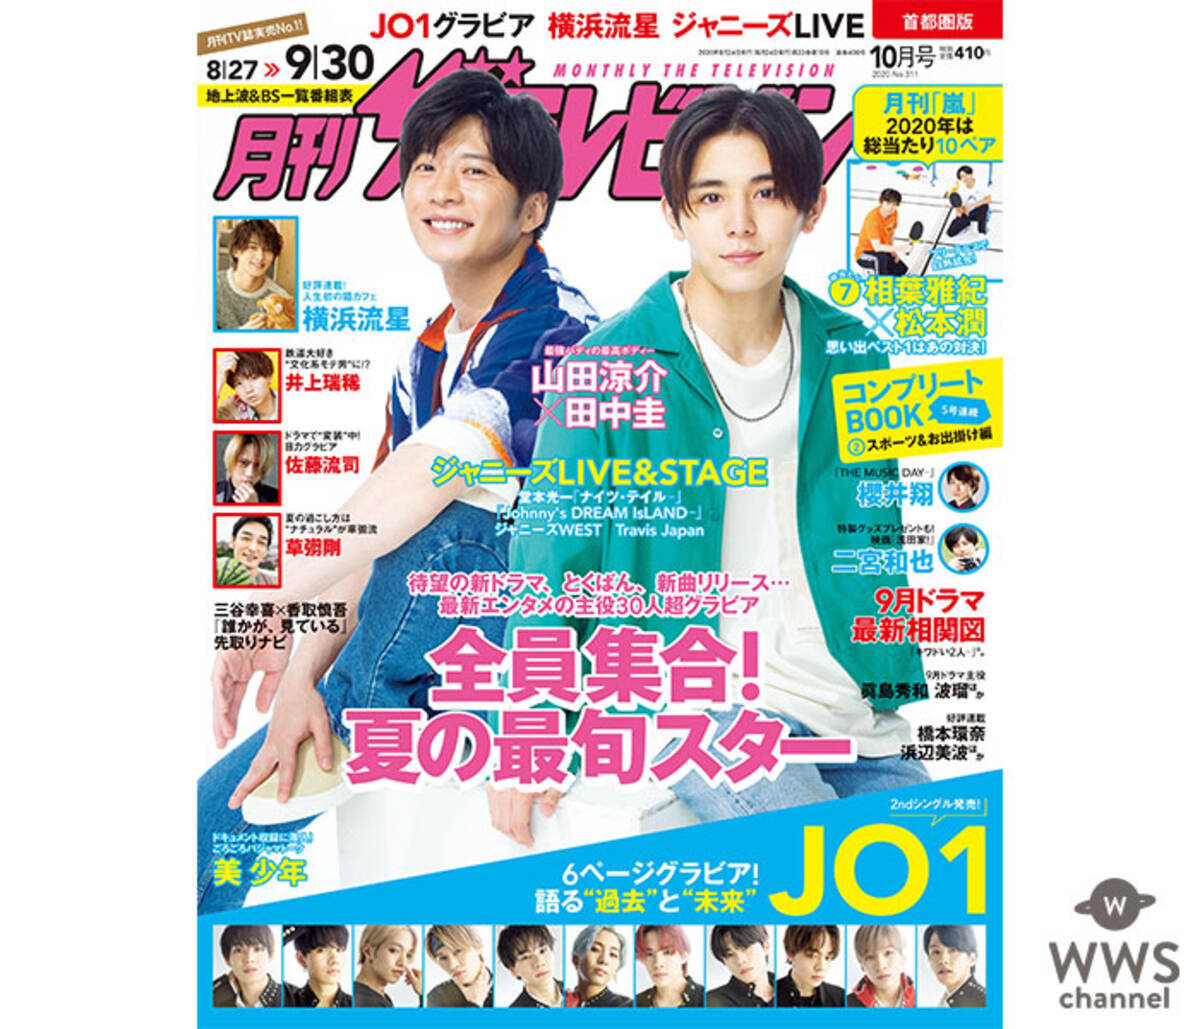 山田涼介 田中圭の キワドい2人 が表紙を飾る 月刊ザテレビジョン 年8月24日 エキサイトニュース